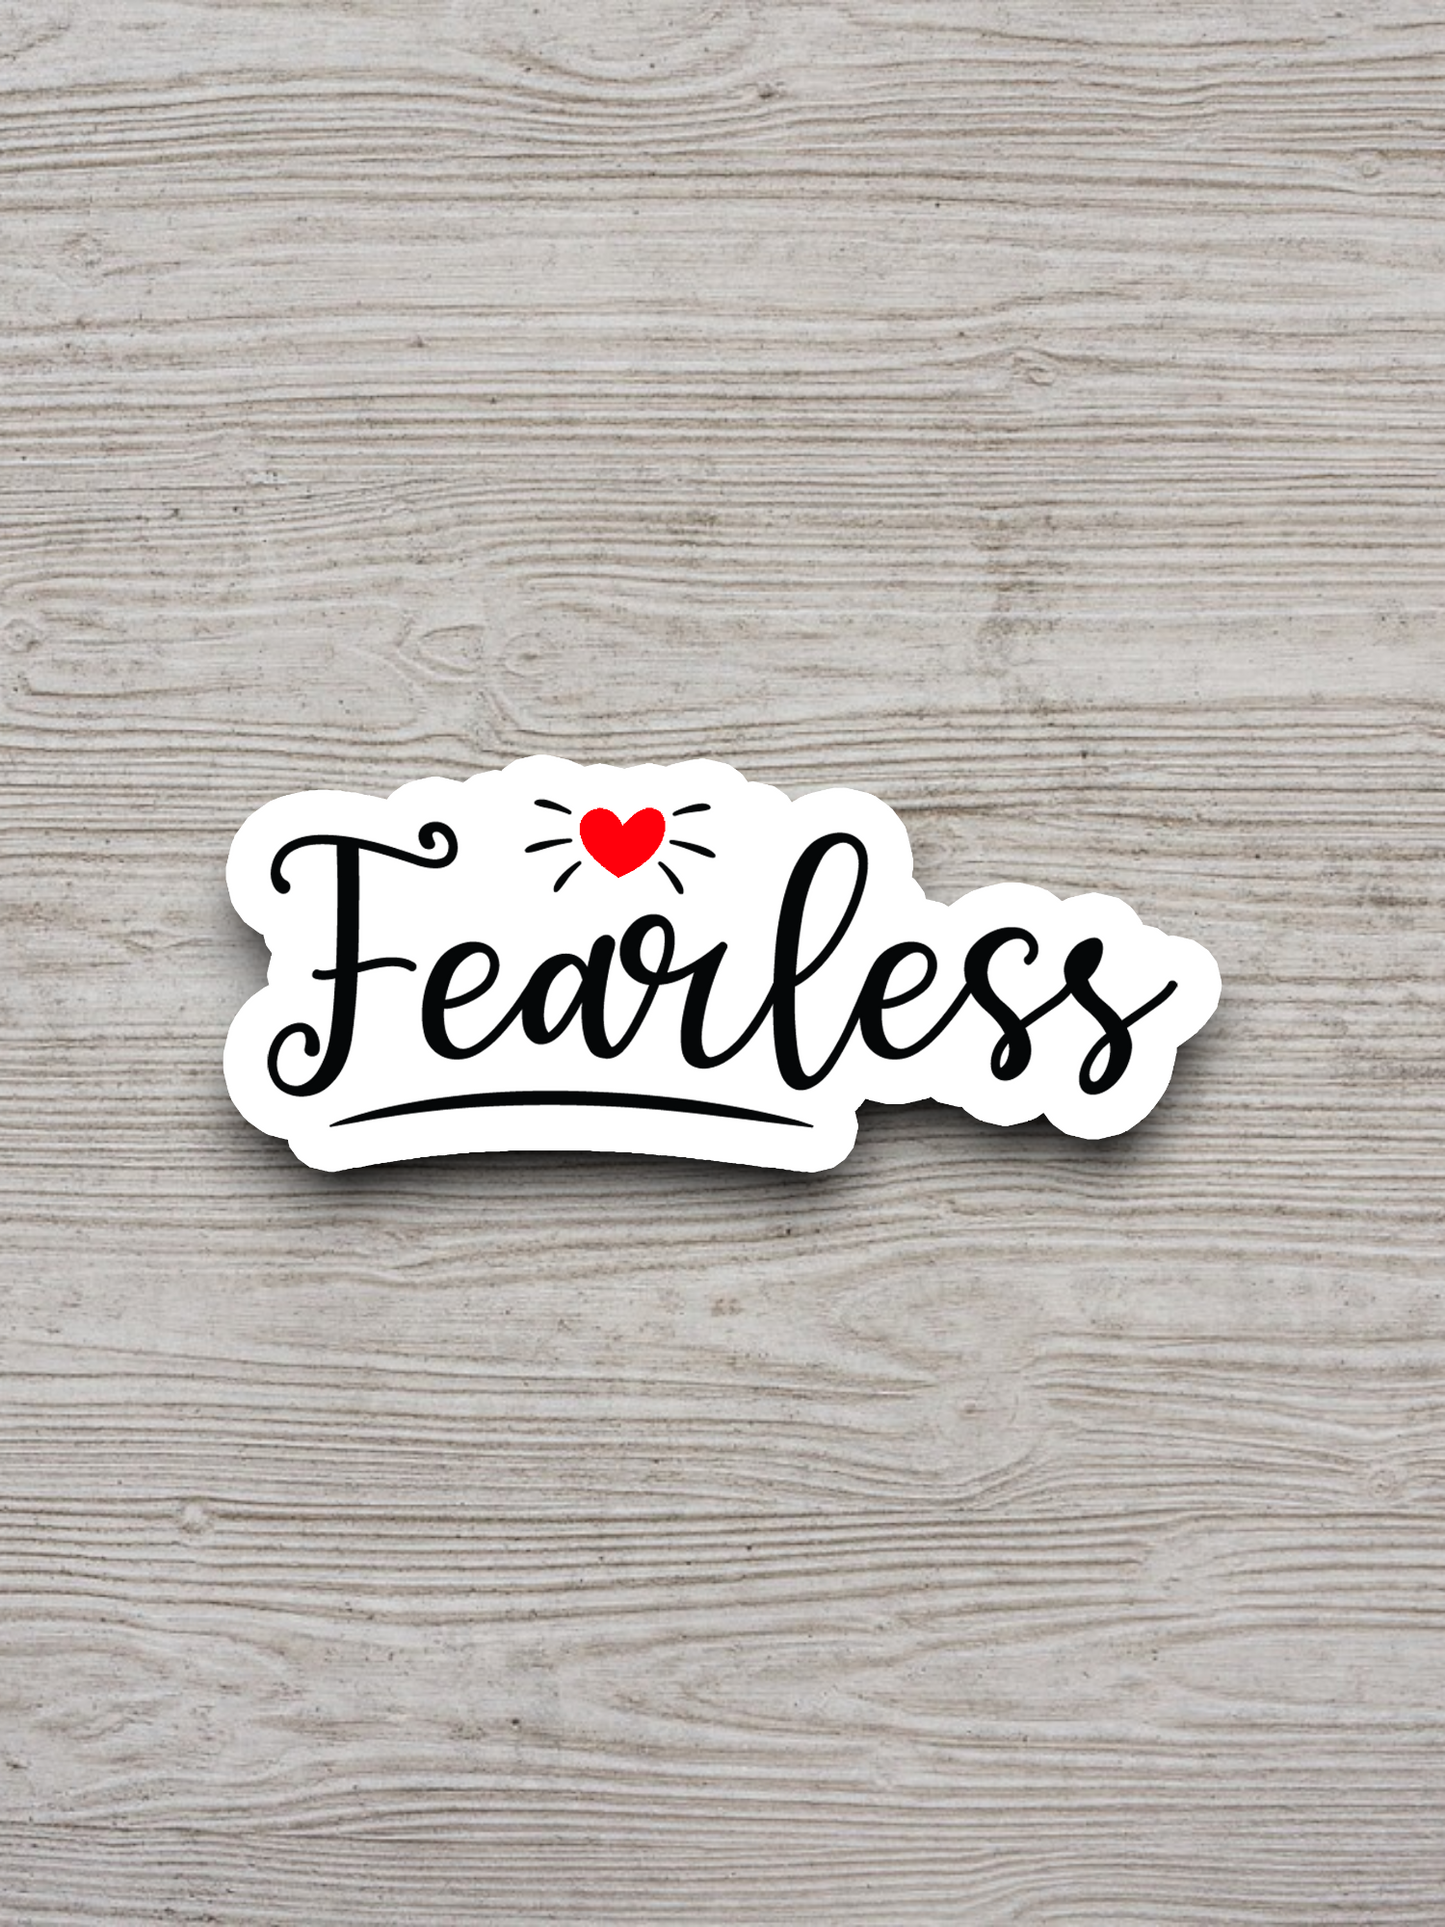 Fearless - Faith Sticker